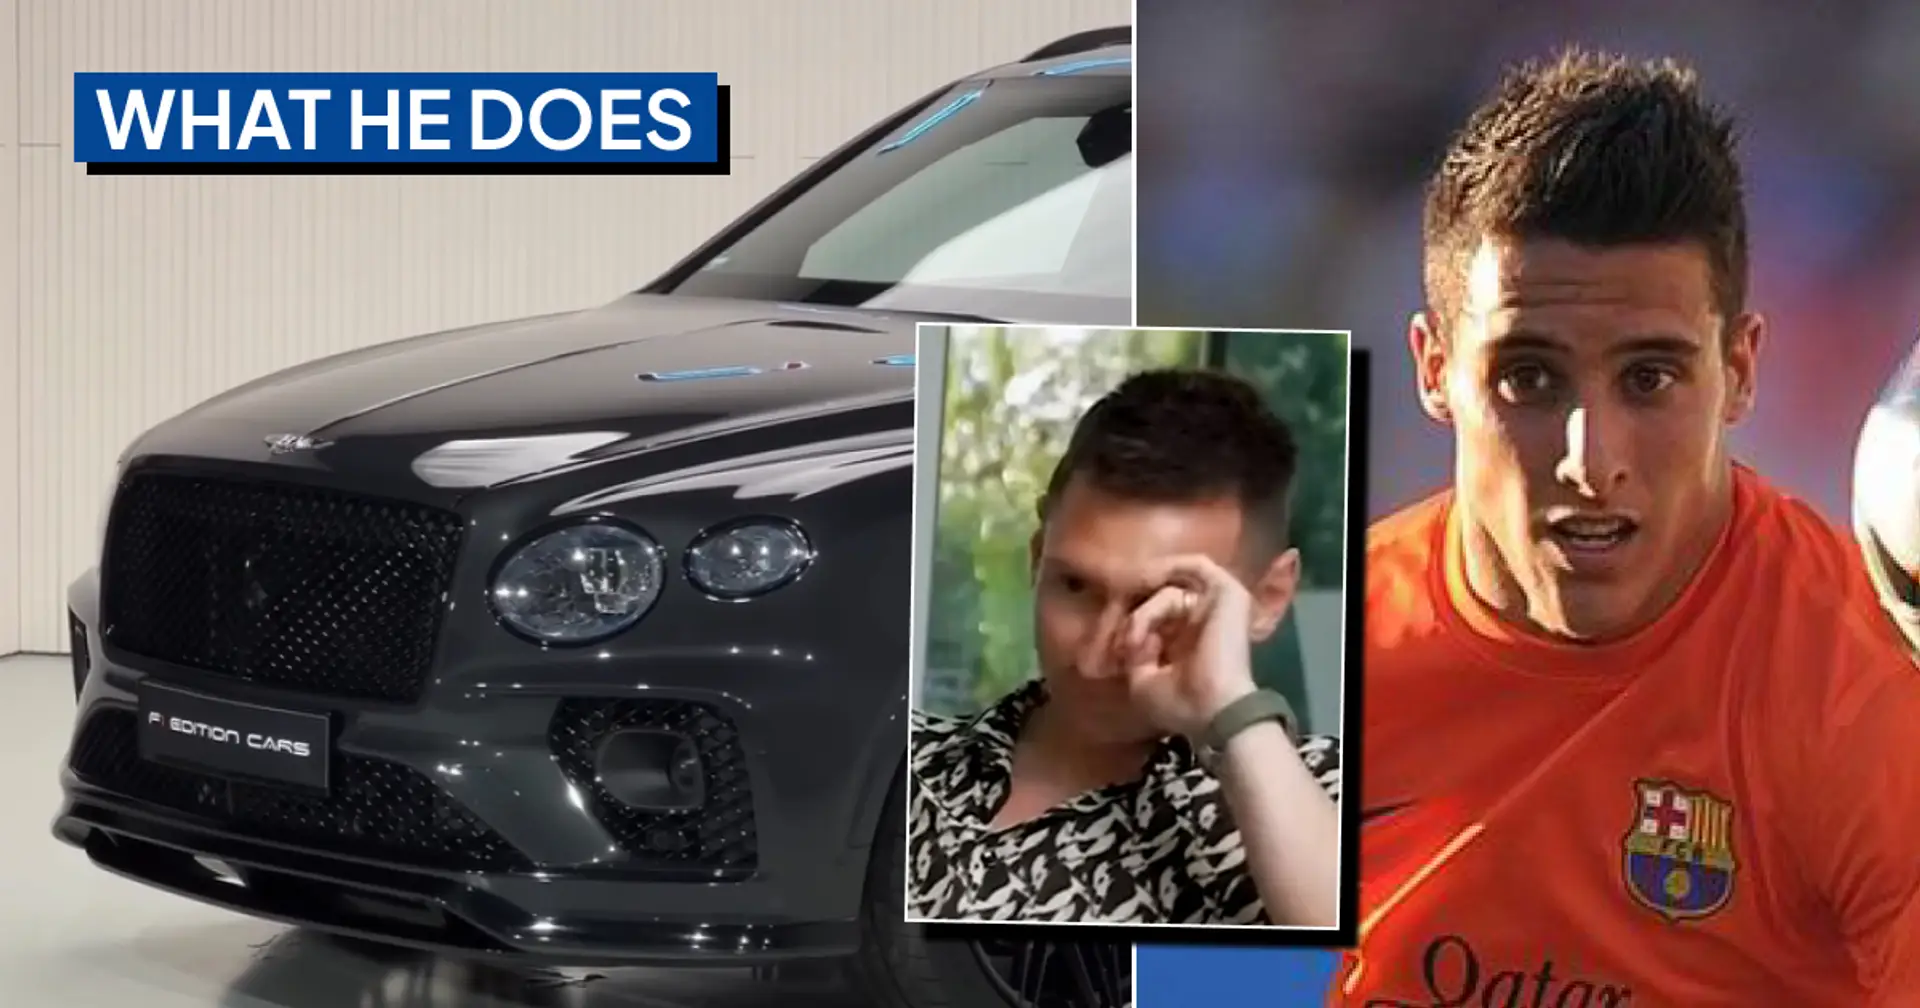 Qu'est-il arrivé à un joueur du Barça, Leo Messi, appelé "personne"